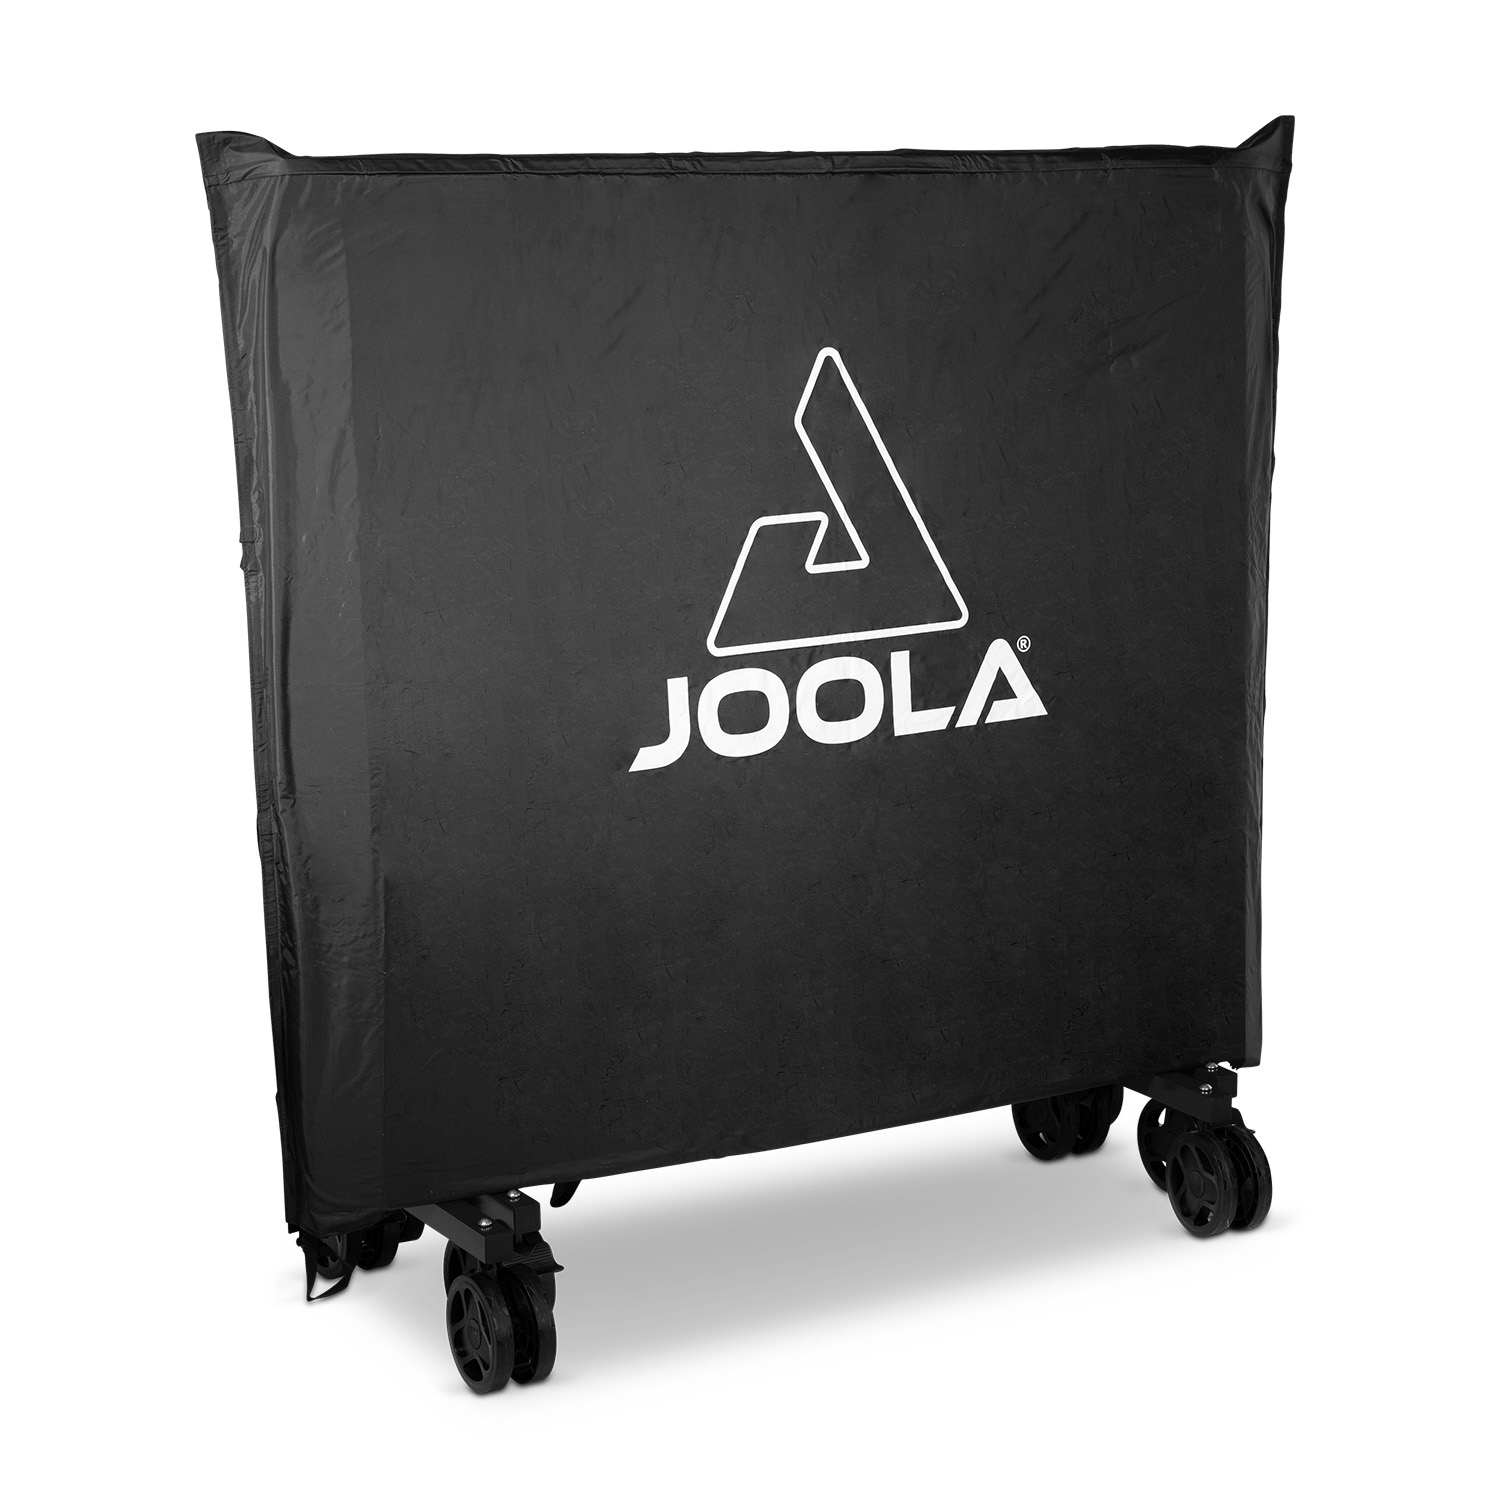 JOOLA Tischtennis Tischabdeckung | JOOLA GmbH Tischtennis